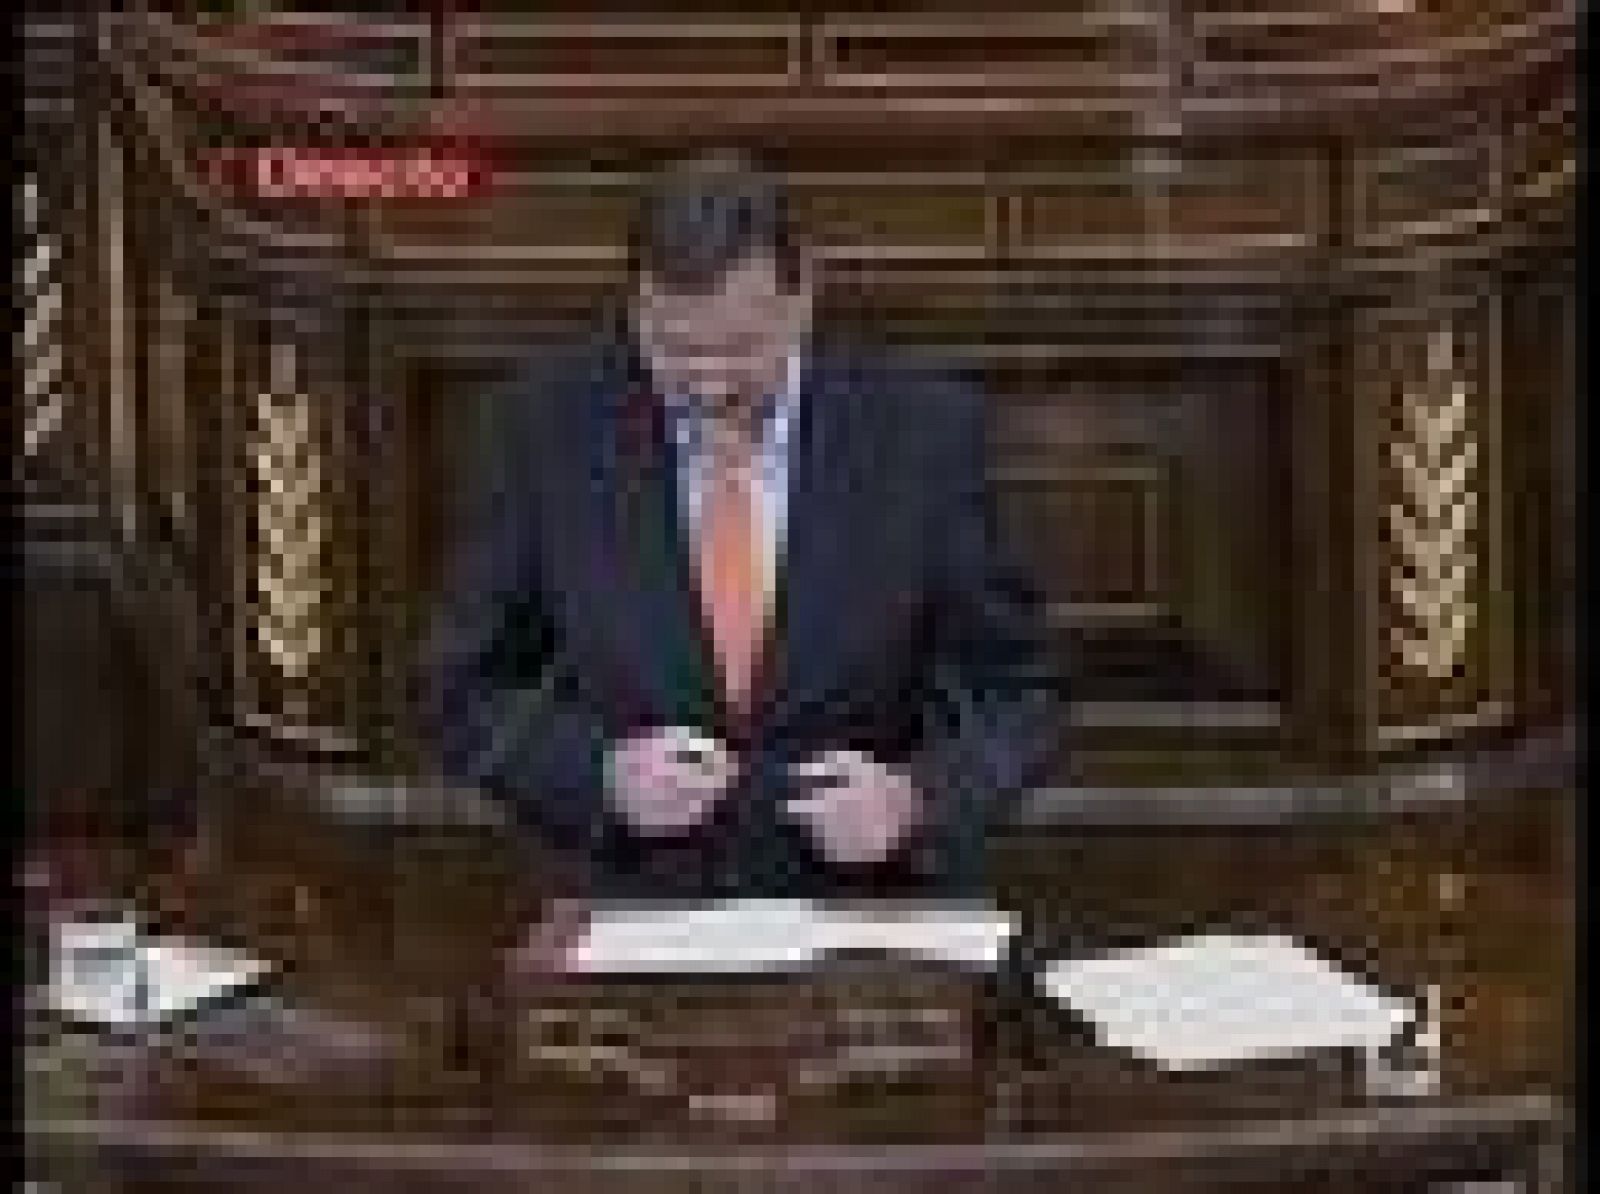 El presidente del PP, Mariano Rajoy, responde al Presidente del Gobierno en el Pleno del Congreso. Rajoy subrayó que la economía está en una crisis muy grave, que nos afecta más que a otros países y que estamos en peores condiciones para encararla porque no se ha aplicado ninguna medida para superar el estancamioento que está sufriendo la actividad económica.